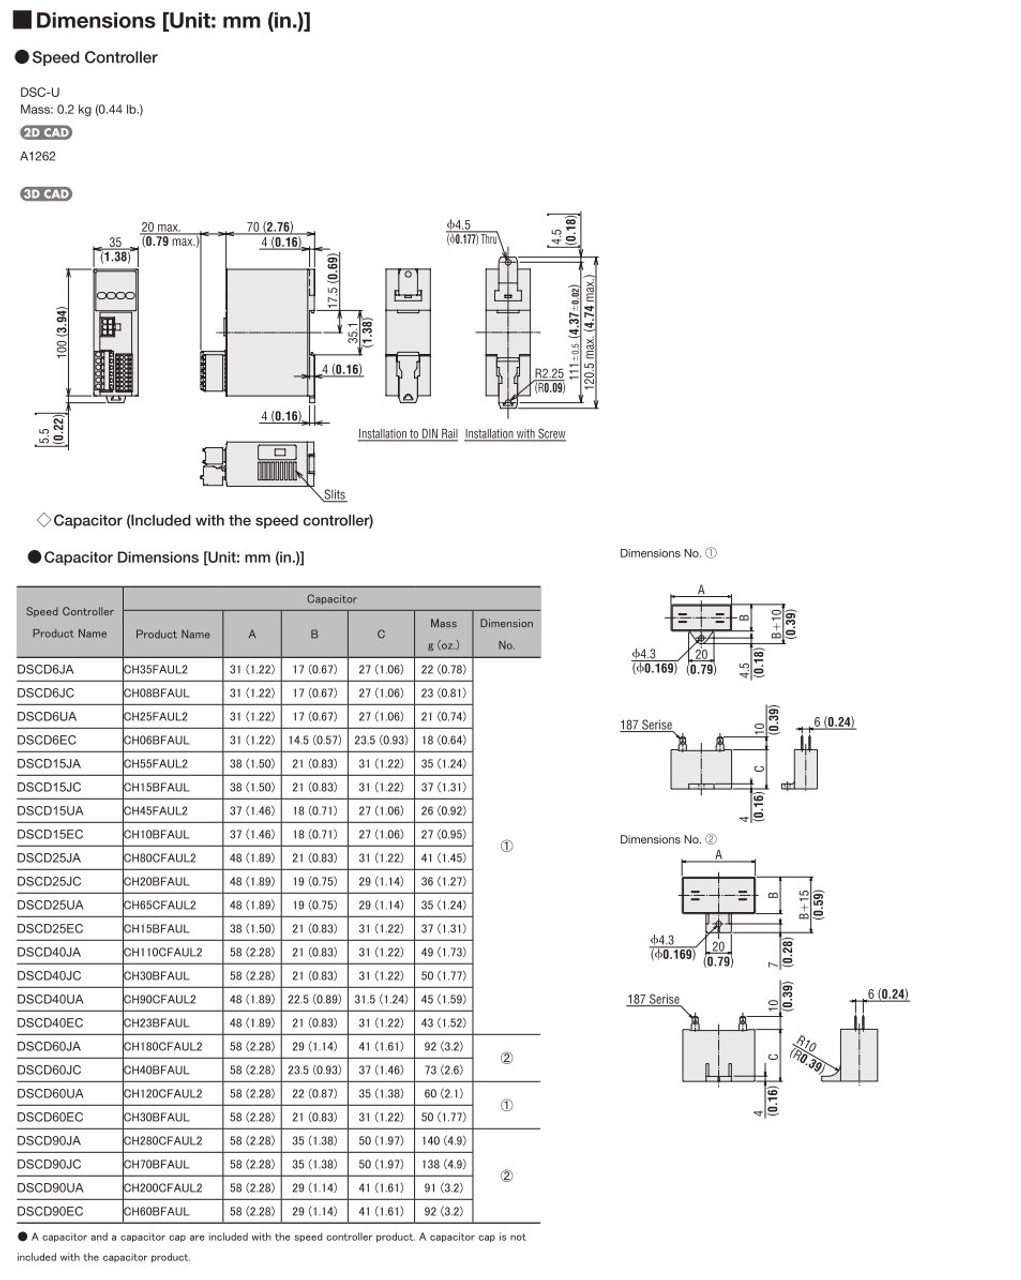 SCM315EC-5A / DSCD15EC - Dimensions